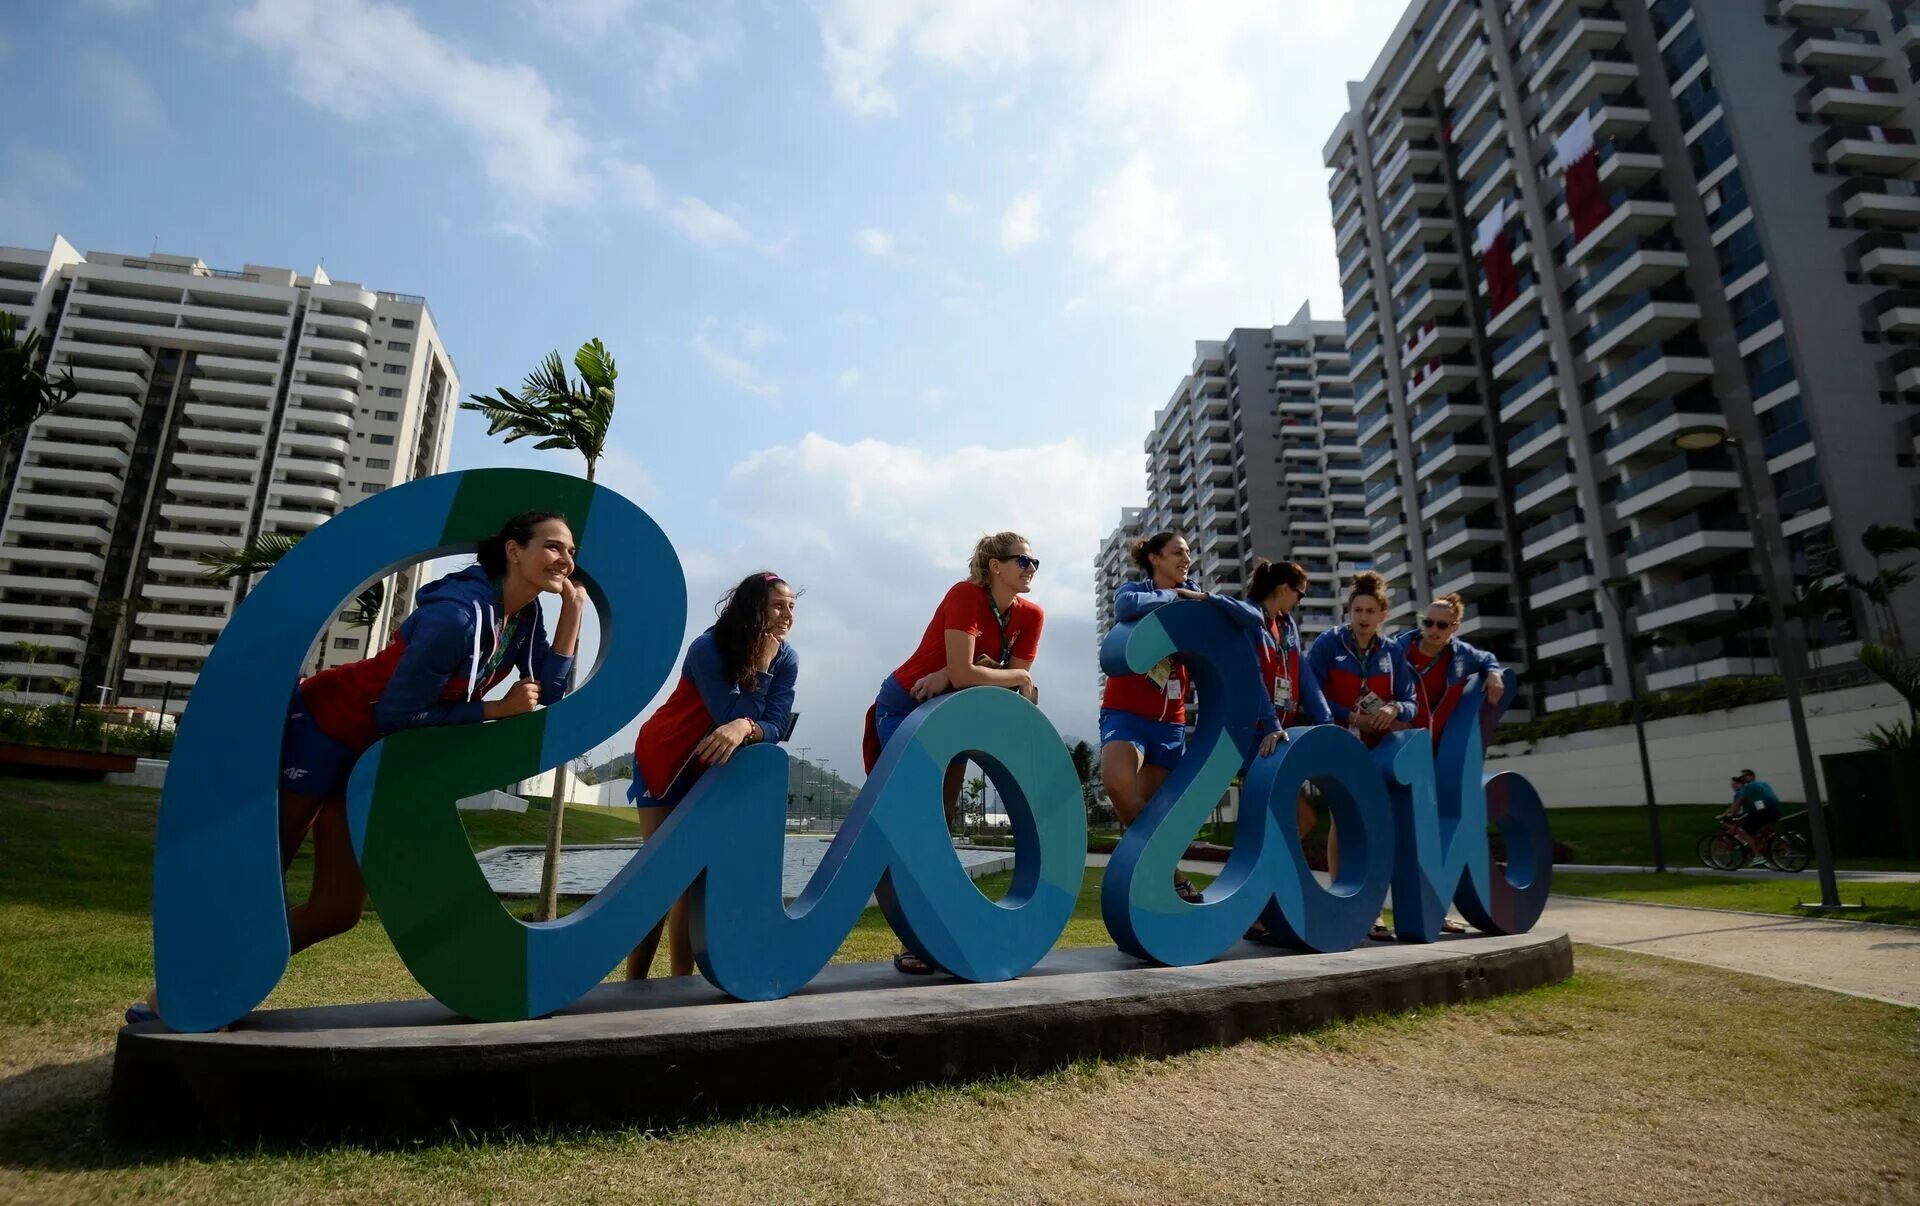 Села рио. Олимпийская деревня Рио-де-Жанейро. Олимпийская деревня в Рио. Олимпийская деревня в Рио де Жанейро фото. Мурад Олимпийская деревня.